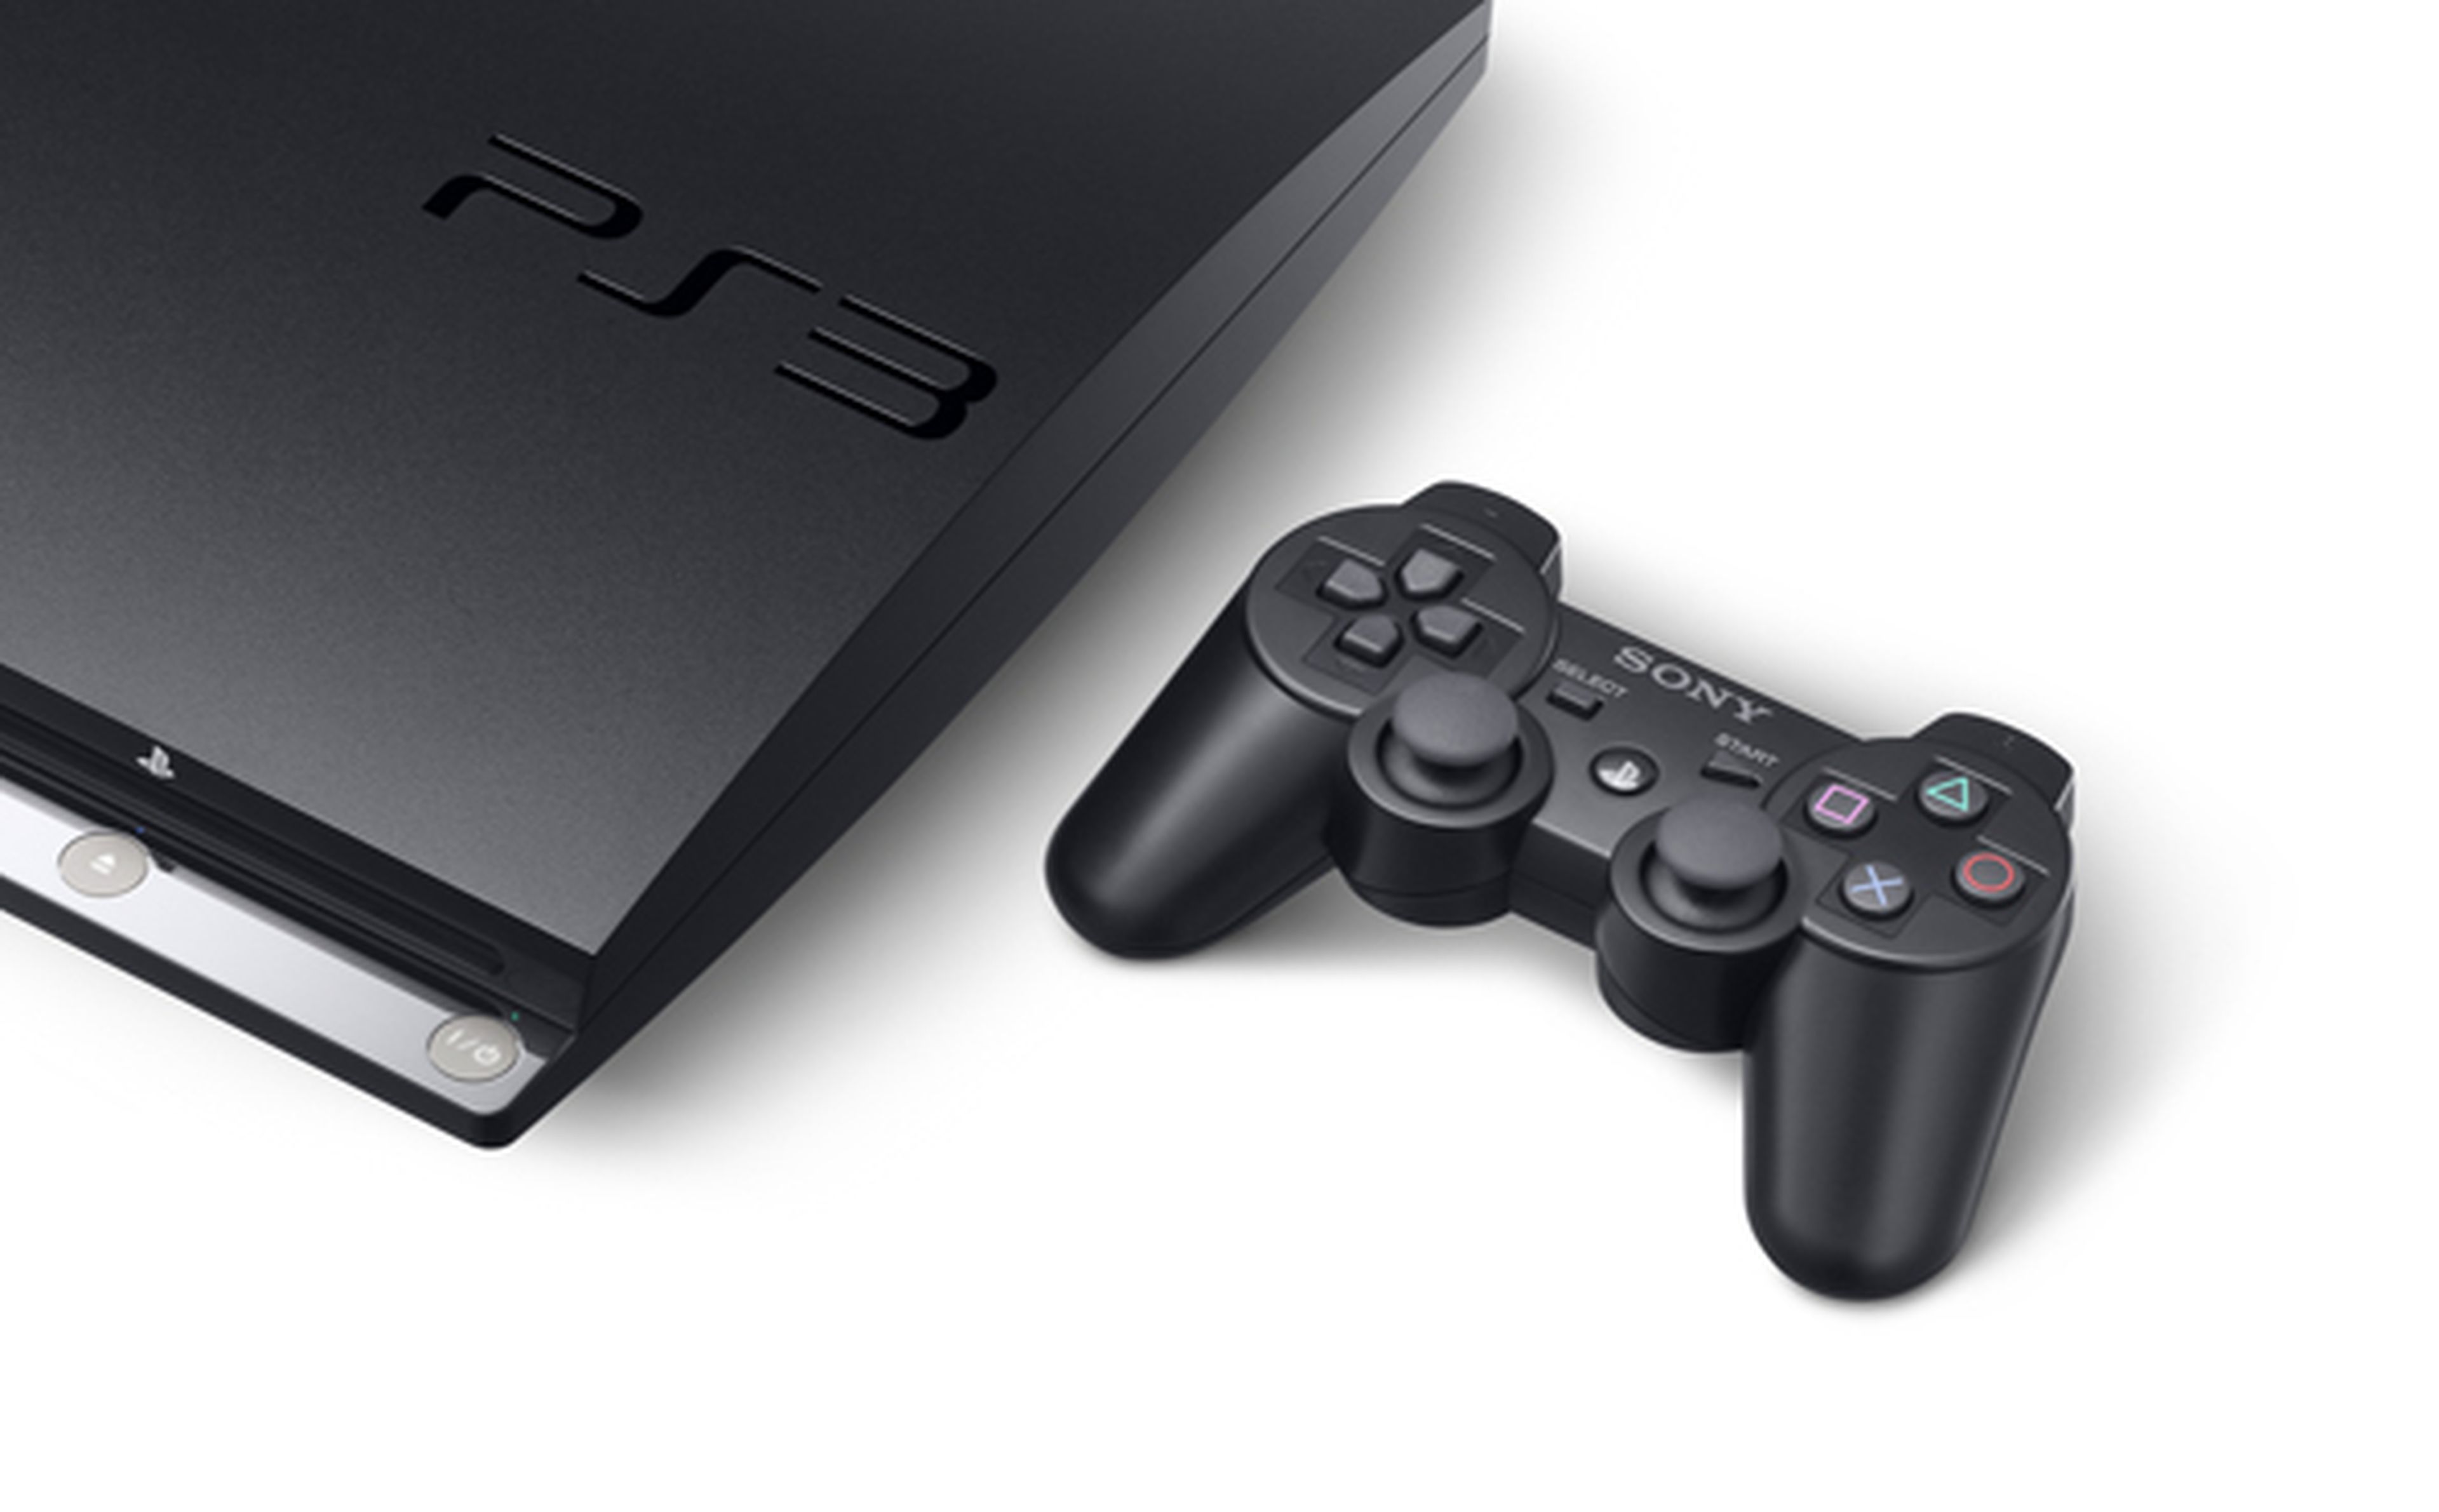 Sony quiere vender 15 millones de PS3